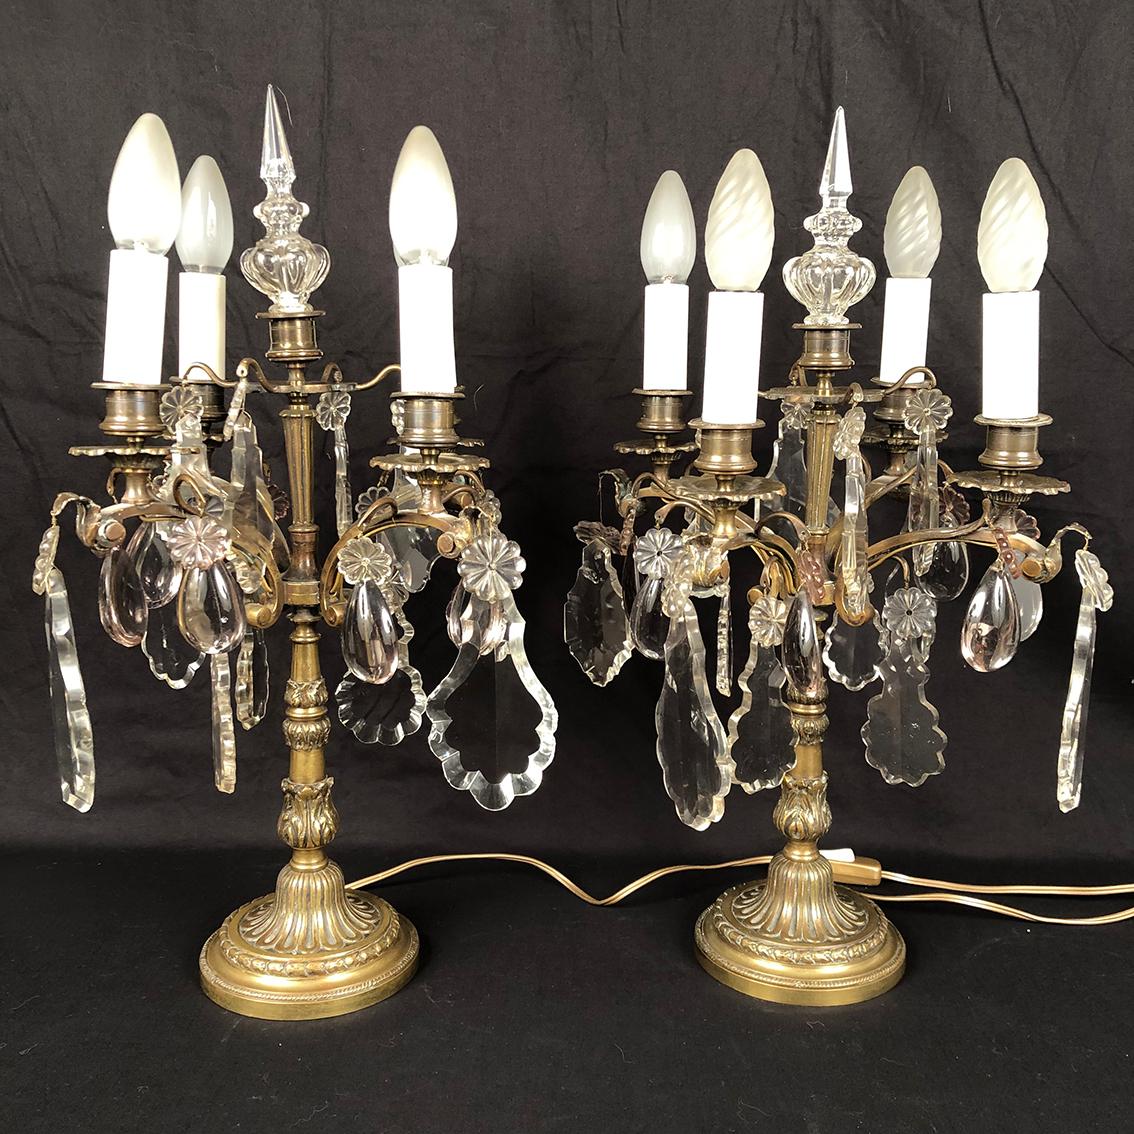 Paire de girandoles en bronze et pendeloques de verre à quatre bras de lumière, XXe
de style Louis XVI
Pendeloques de grande taille (une manquante) en verre transparent, pampilles en verre violine et poignards.
Fût ouvragé sur une base